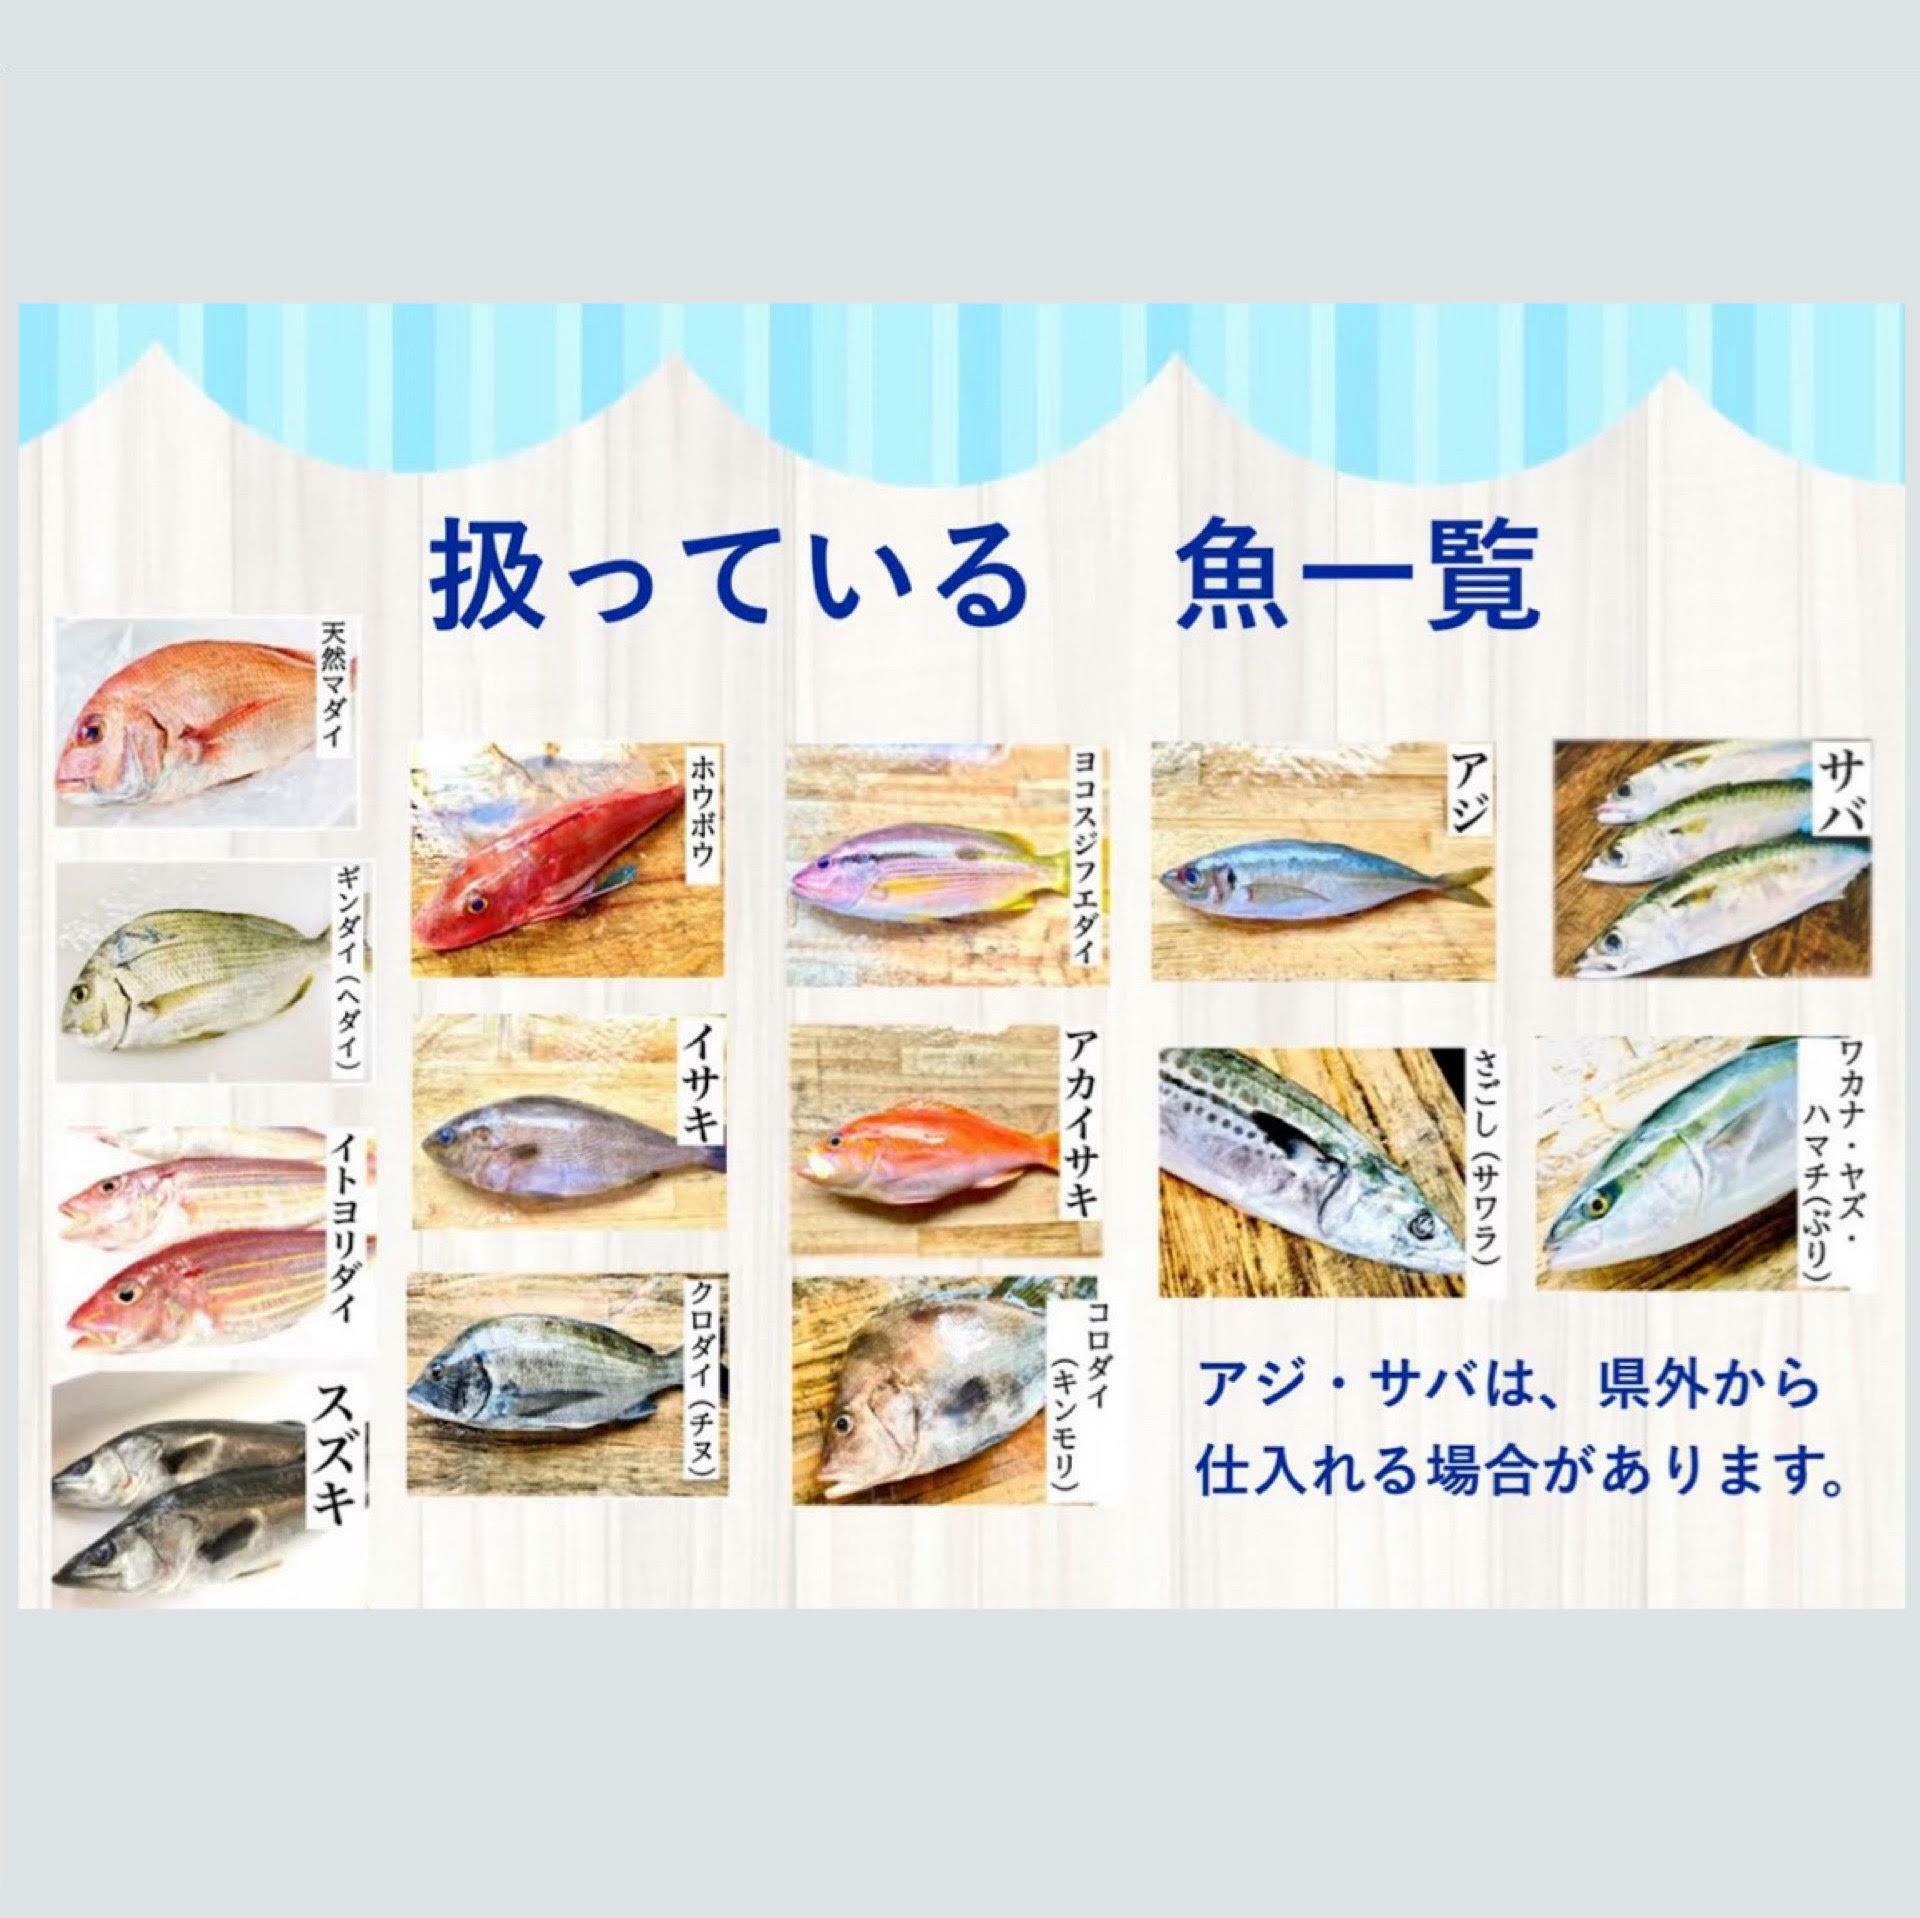 取り扱っている魚は10種類を超えます。